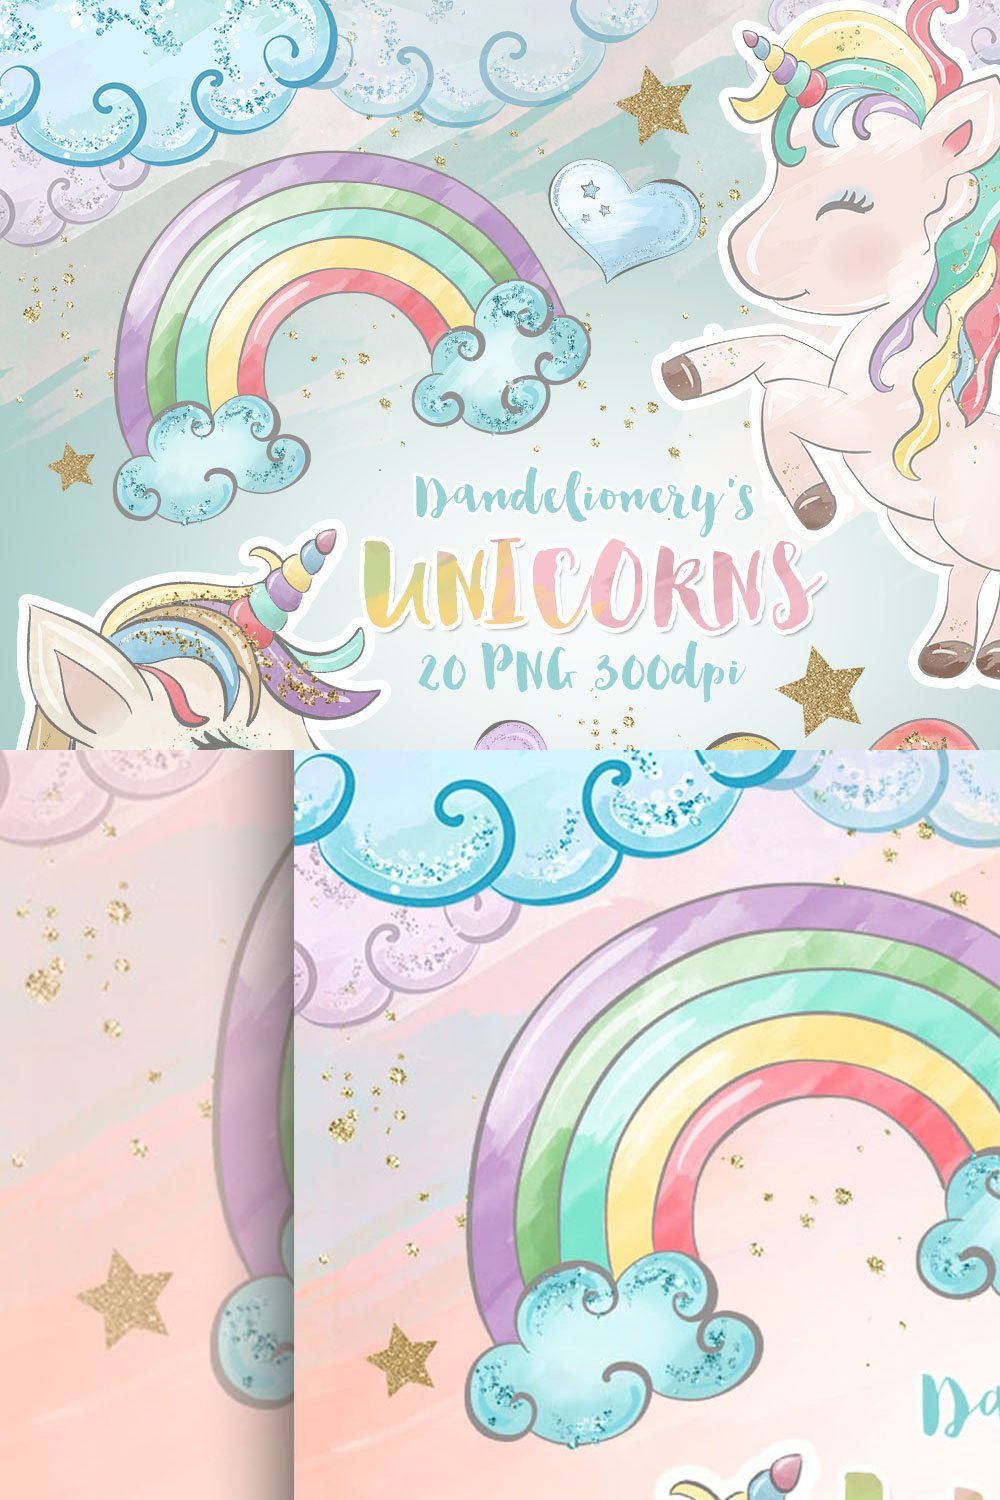 Unicorn dreams design pinterest preview image.